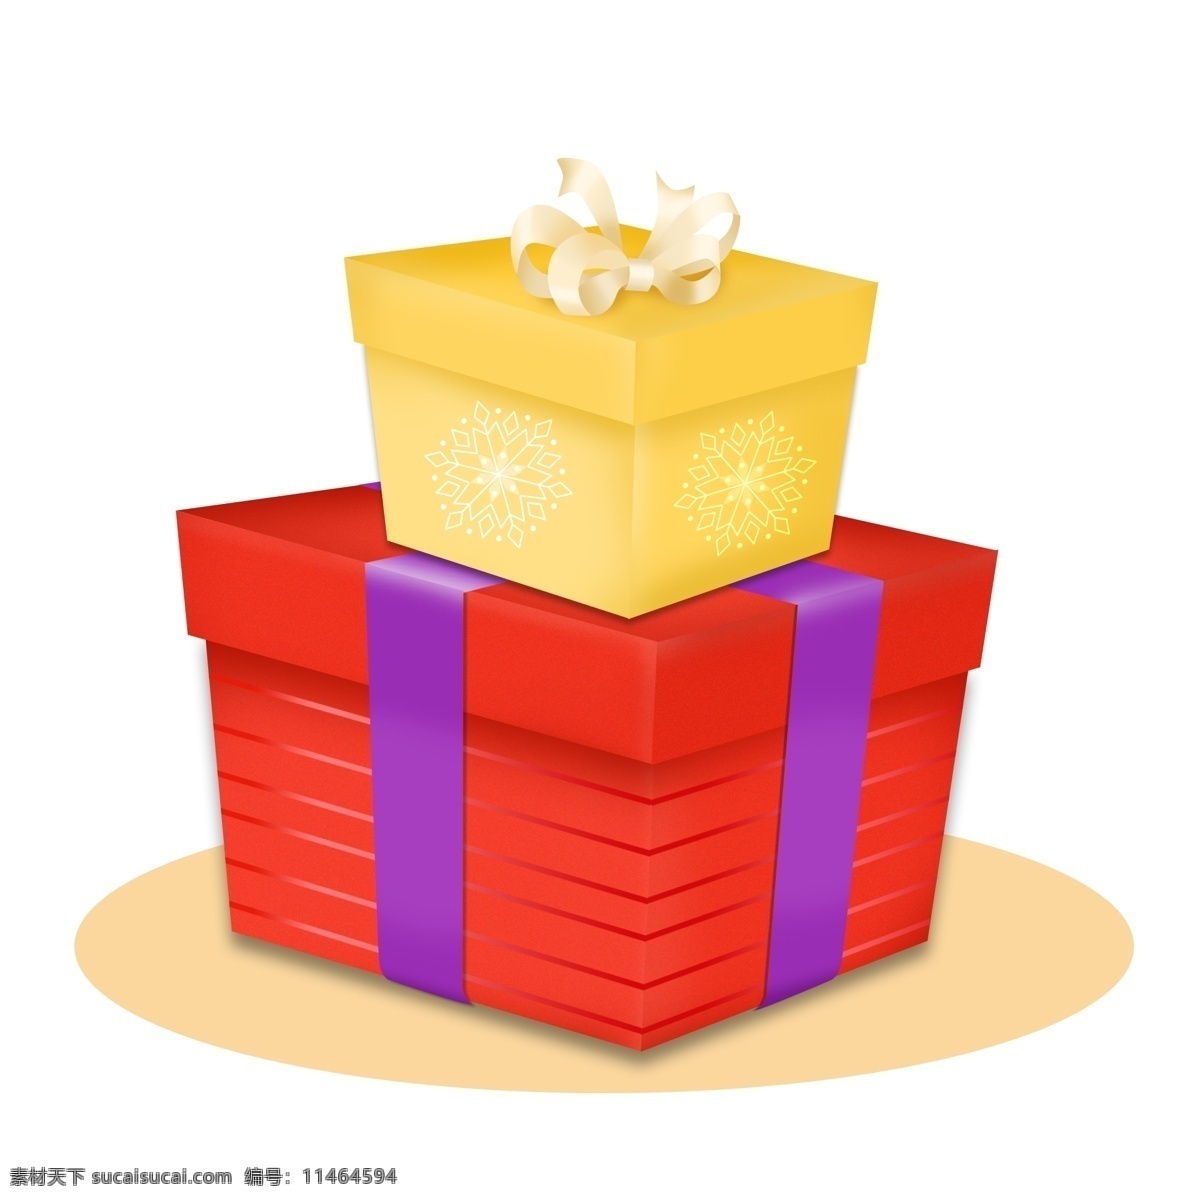 手绘 节日 礼物 盒 礼品盒 圣诞 平安夜 包装 蝴蝶结 生日 圣诞节 包装盒 红色 礼物盒 黄色